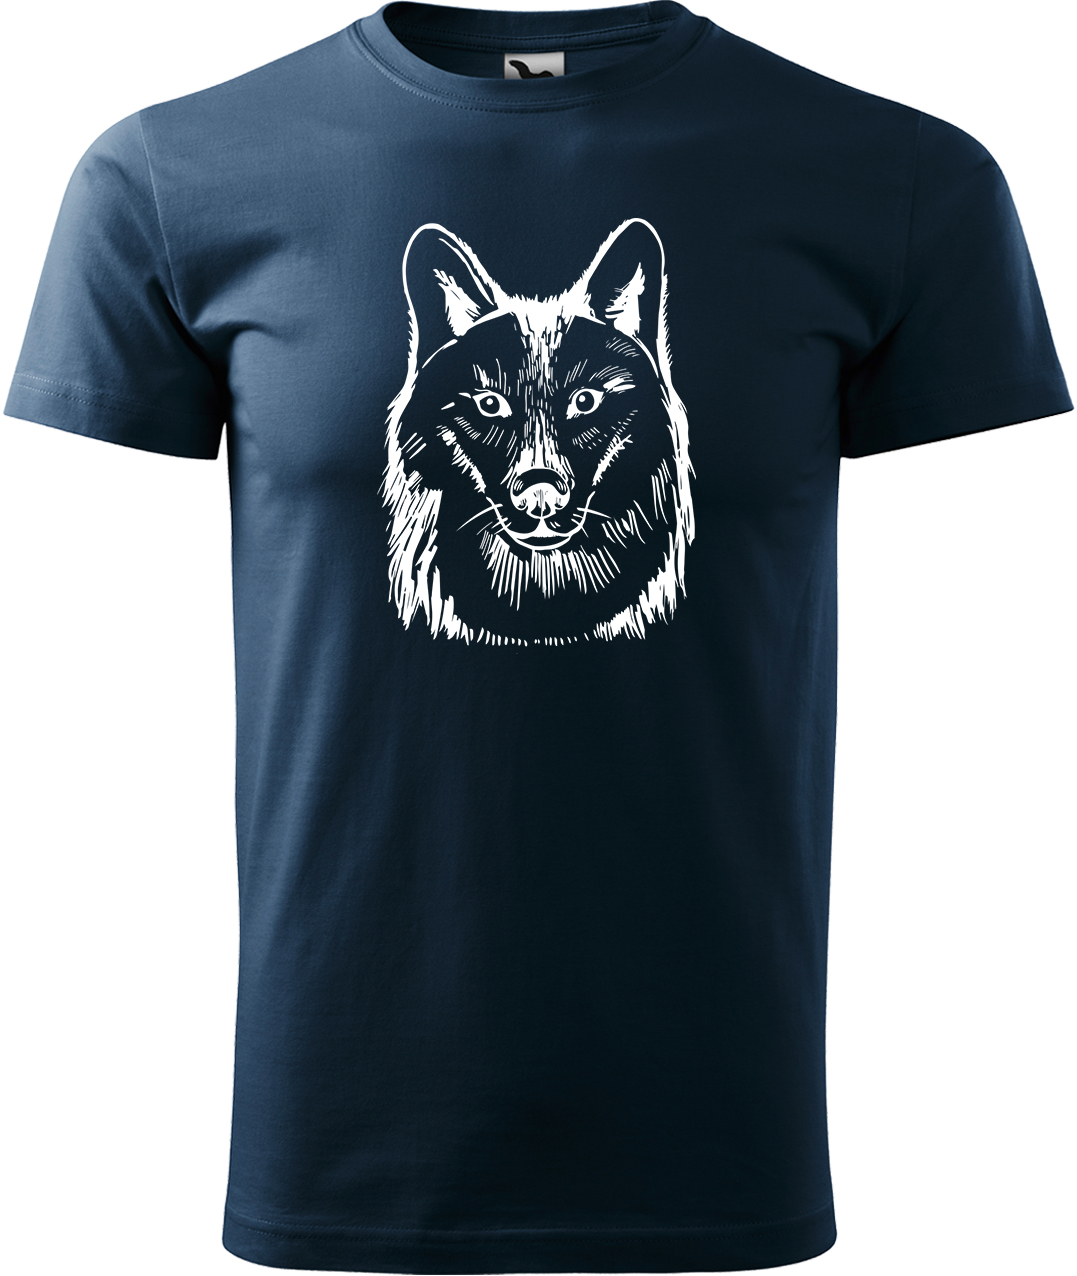 Pánské tričko s vlkem - Kresba vlka Velikost: XL, Barva: Námořní modrá (02), Střih: pánský